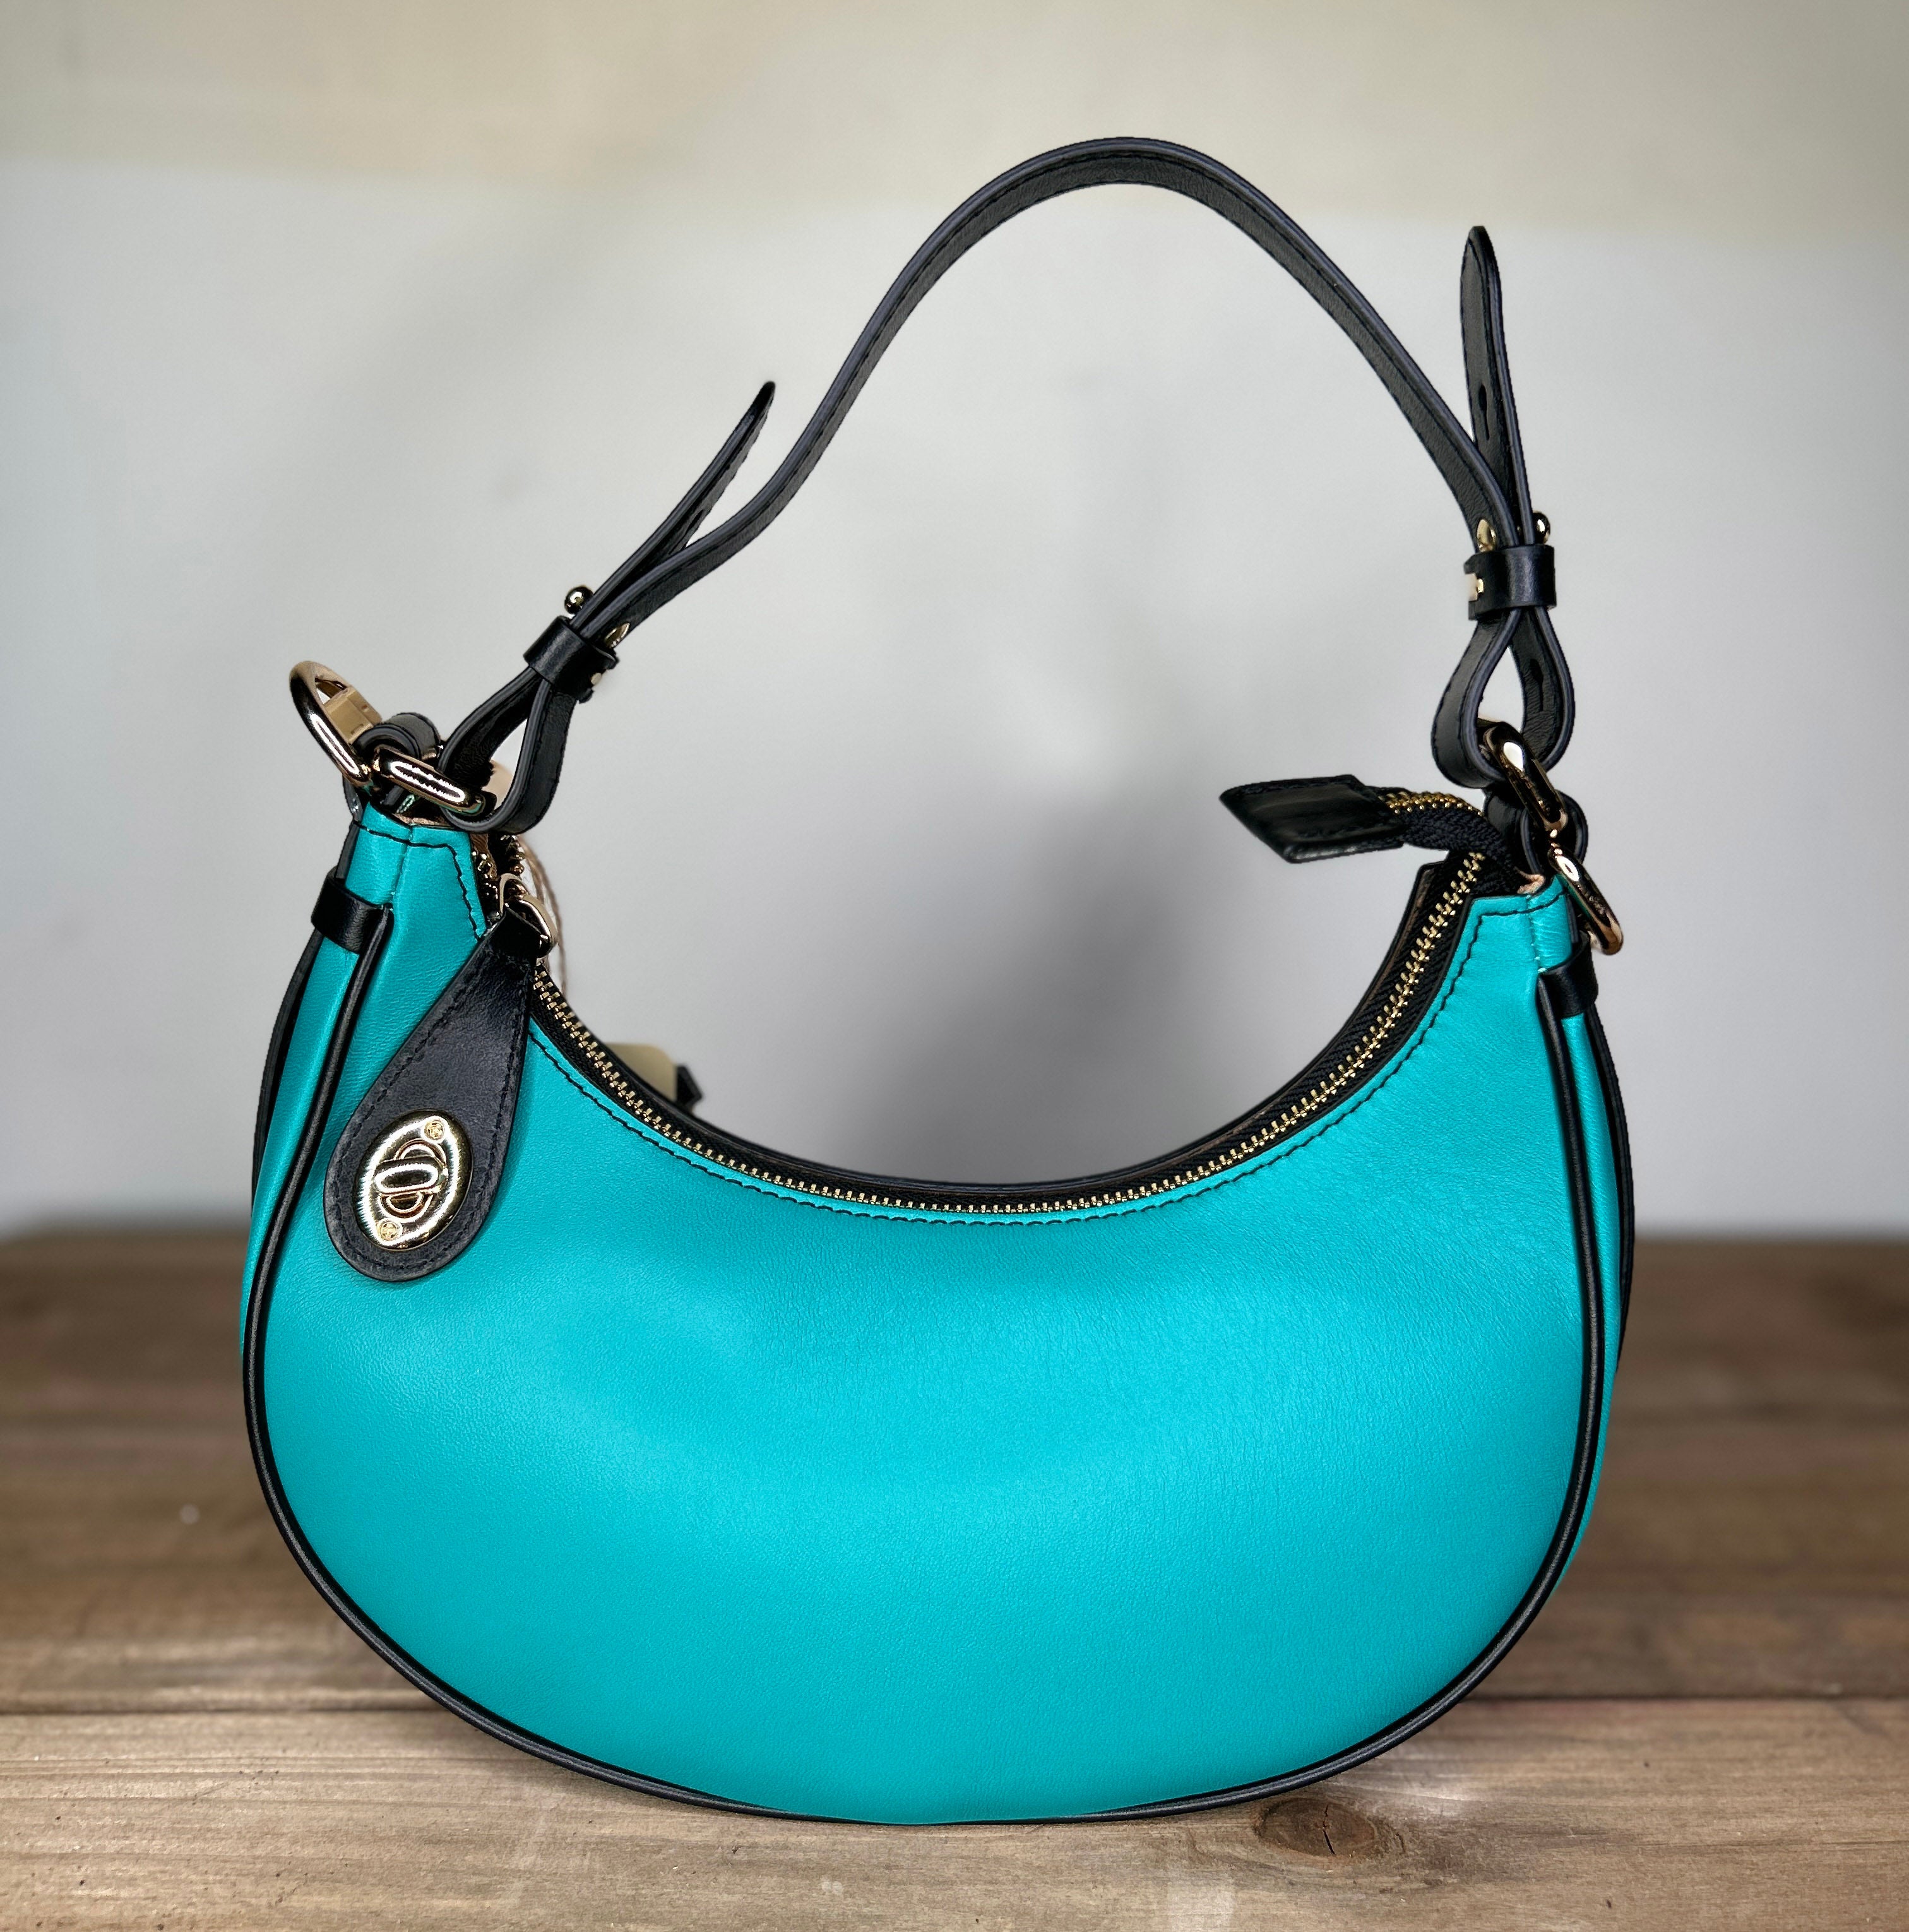 Leather Bag Soft Leather Shoulder Bag Leather Handbag Black - Etsy | Black leather  handbags, Bags leather handbags, Bags